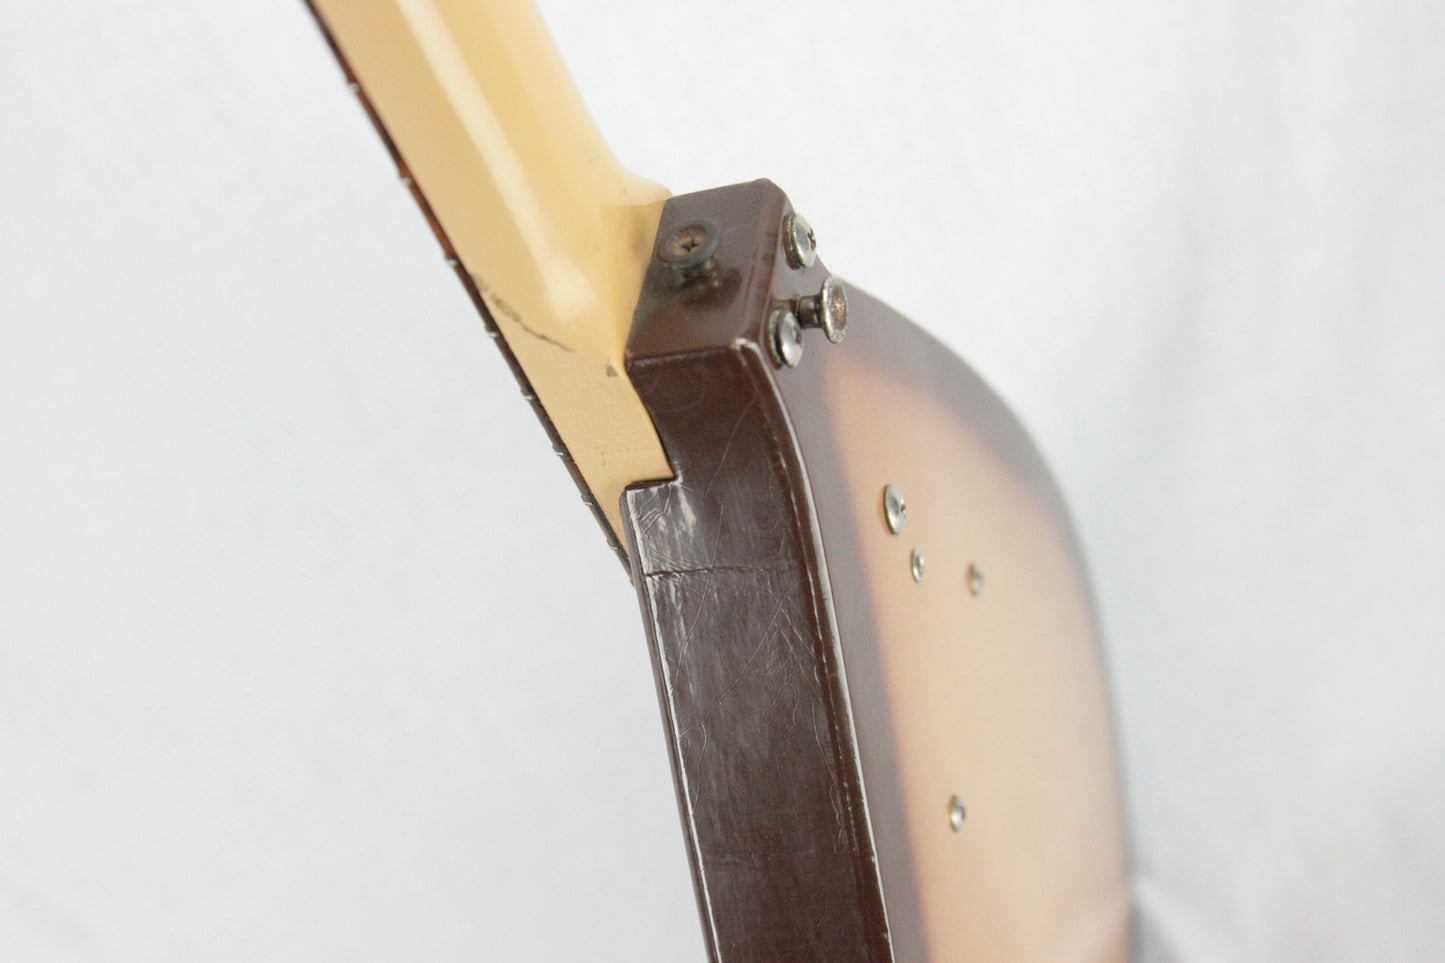 1960s Danelectro Bellzouki Model 7010 Vincent Bell Vintage 12 String USA Teardrop vox